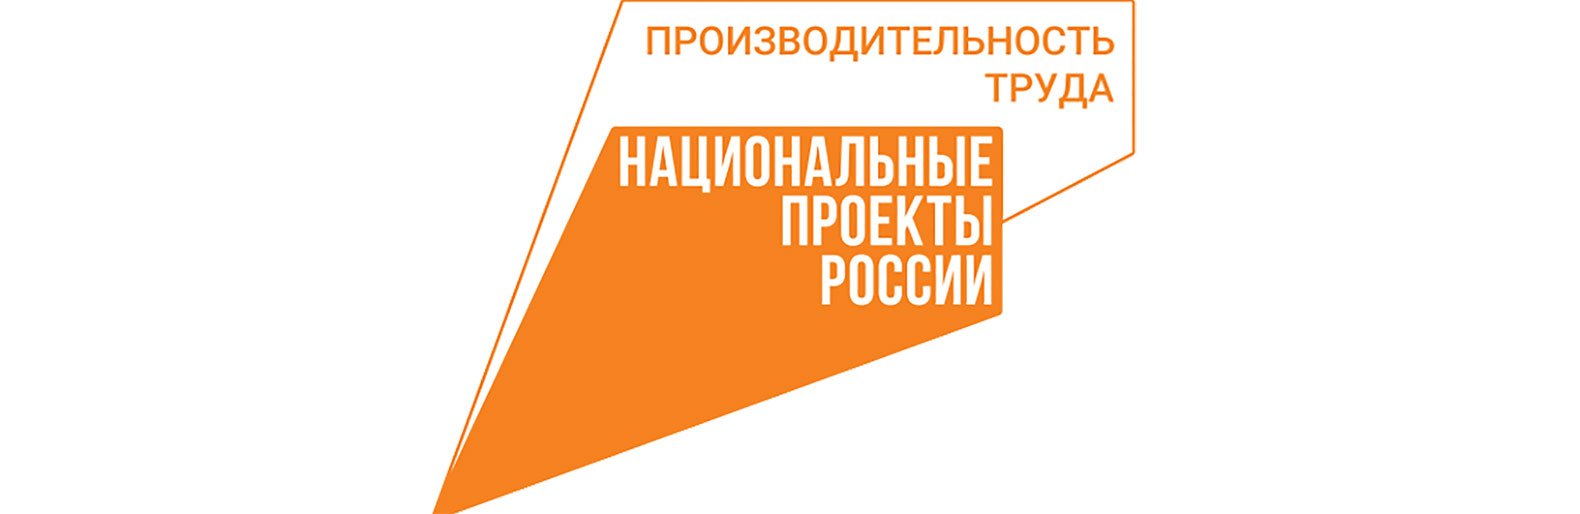 40 субъектов РФ вошли в группу лидеров рейтинга нацпроекта «Производительность труда»